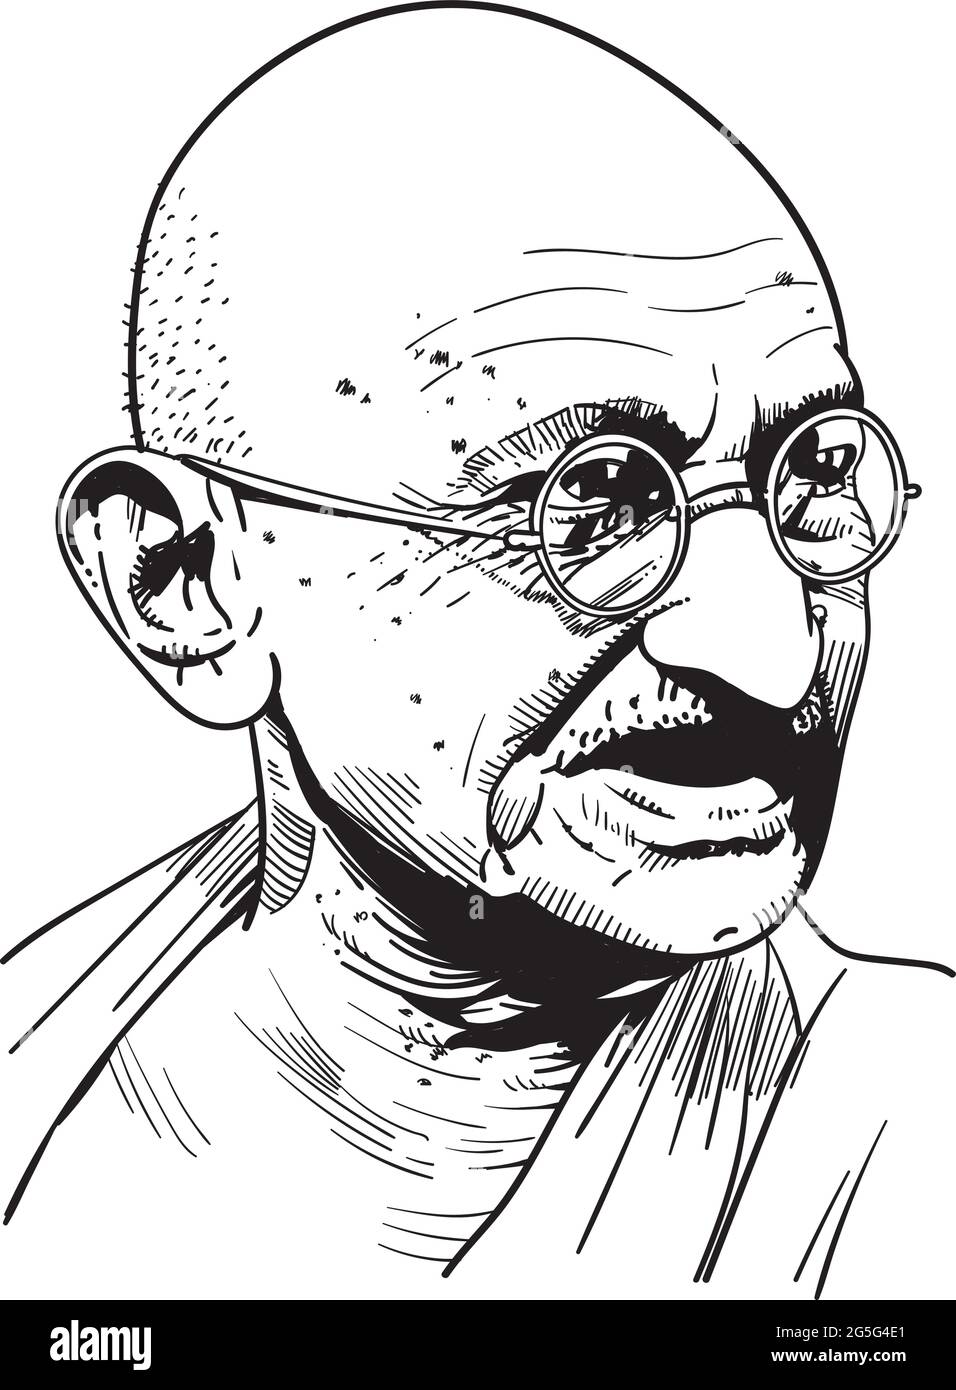 Mohandas Karamchand Gandhi war ein indischer Anwalt, antikolonialer Nationalist und politischer Ethiker. Vektor Stock Vektor